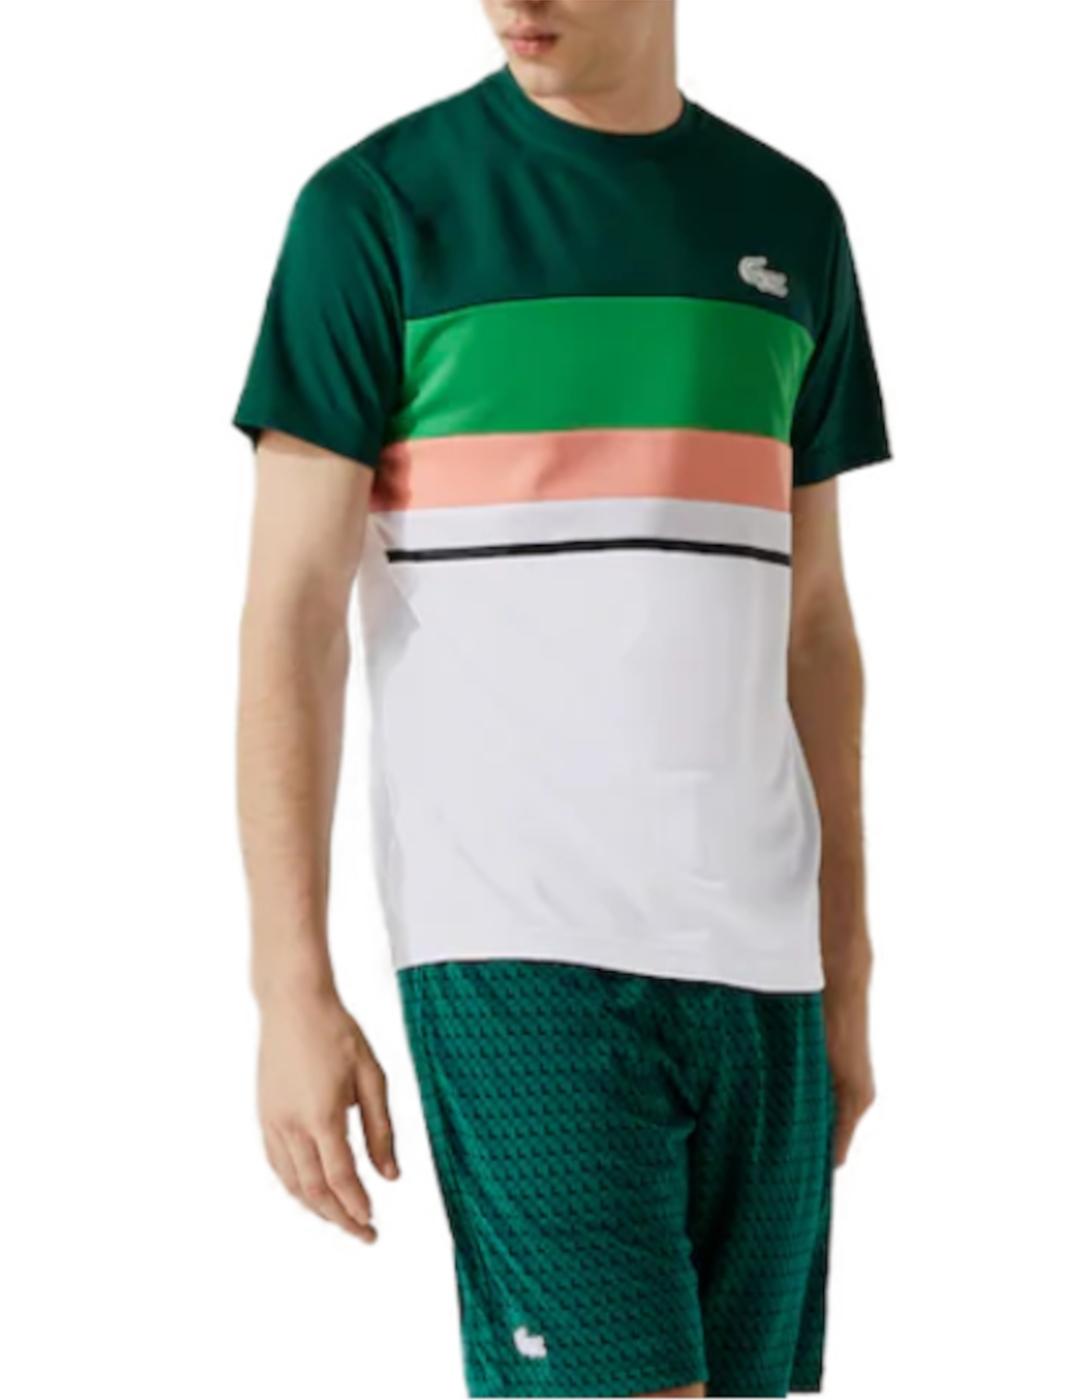 Camiseta Lacoste verde, blanca y coral de hombre-z